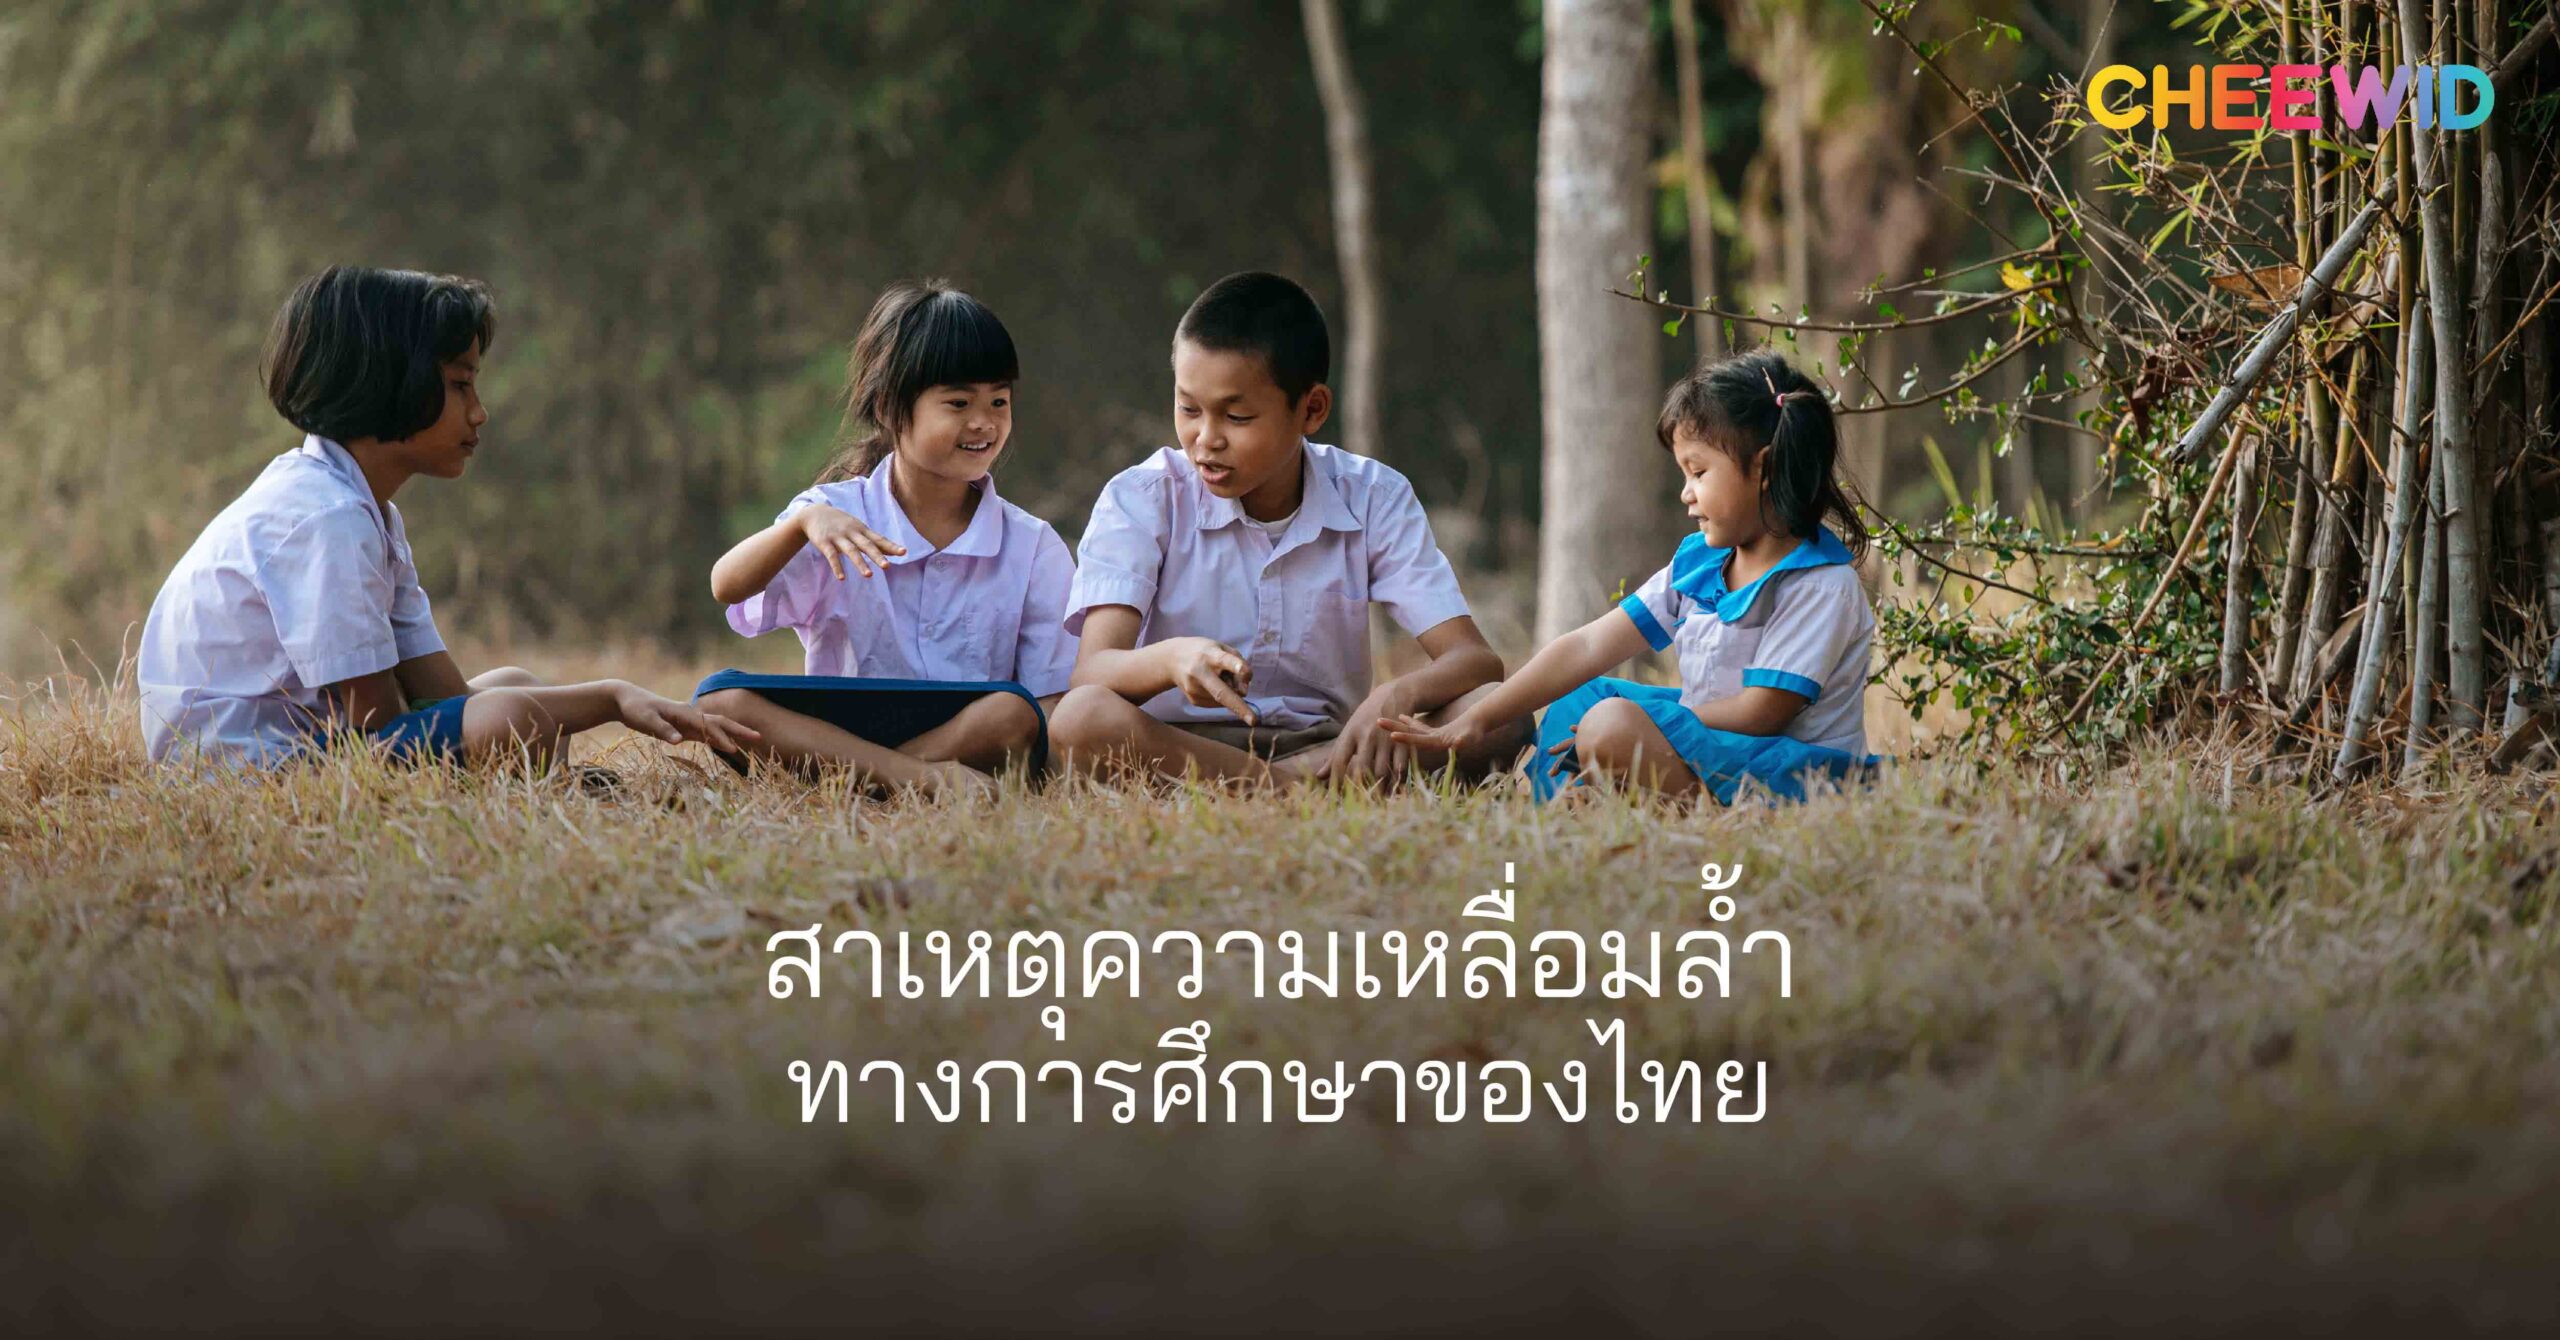 สาเหตุความเหลื่อมล้ำทางการศึกษาของไทย